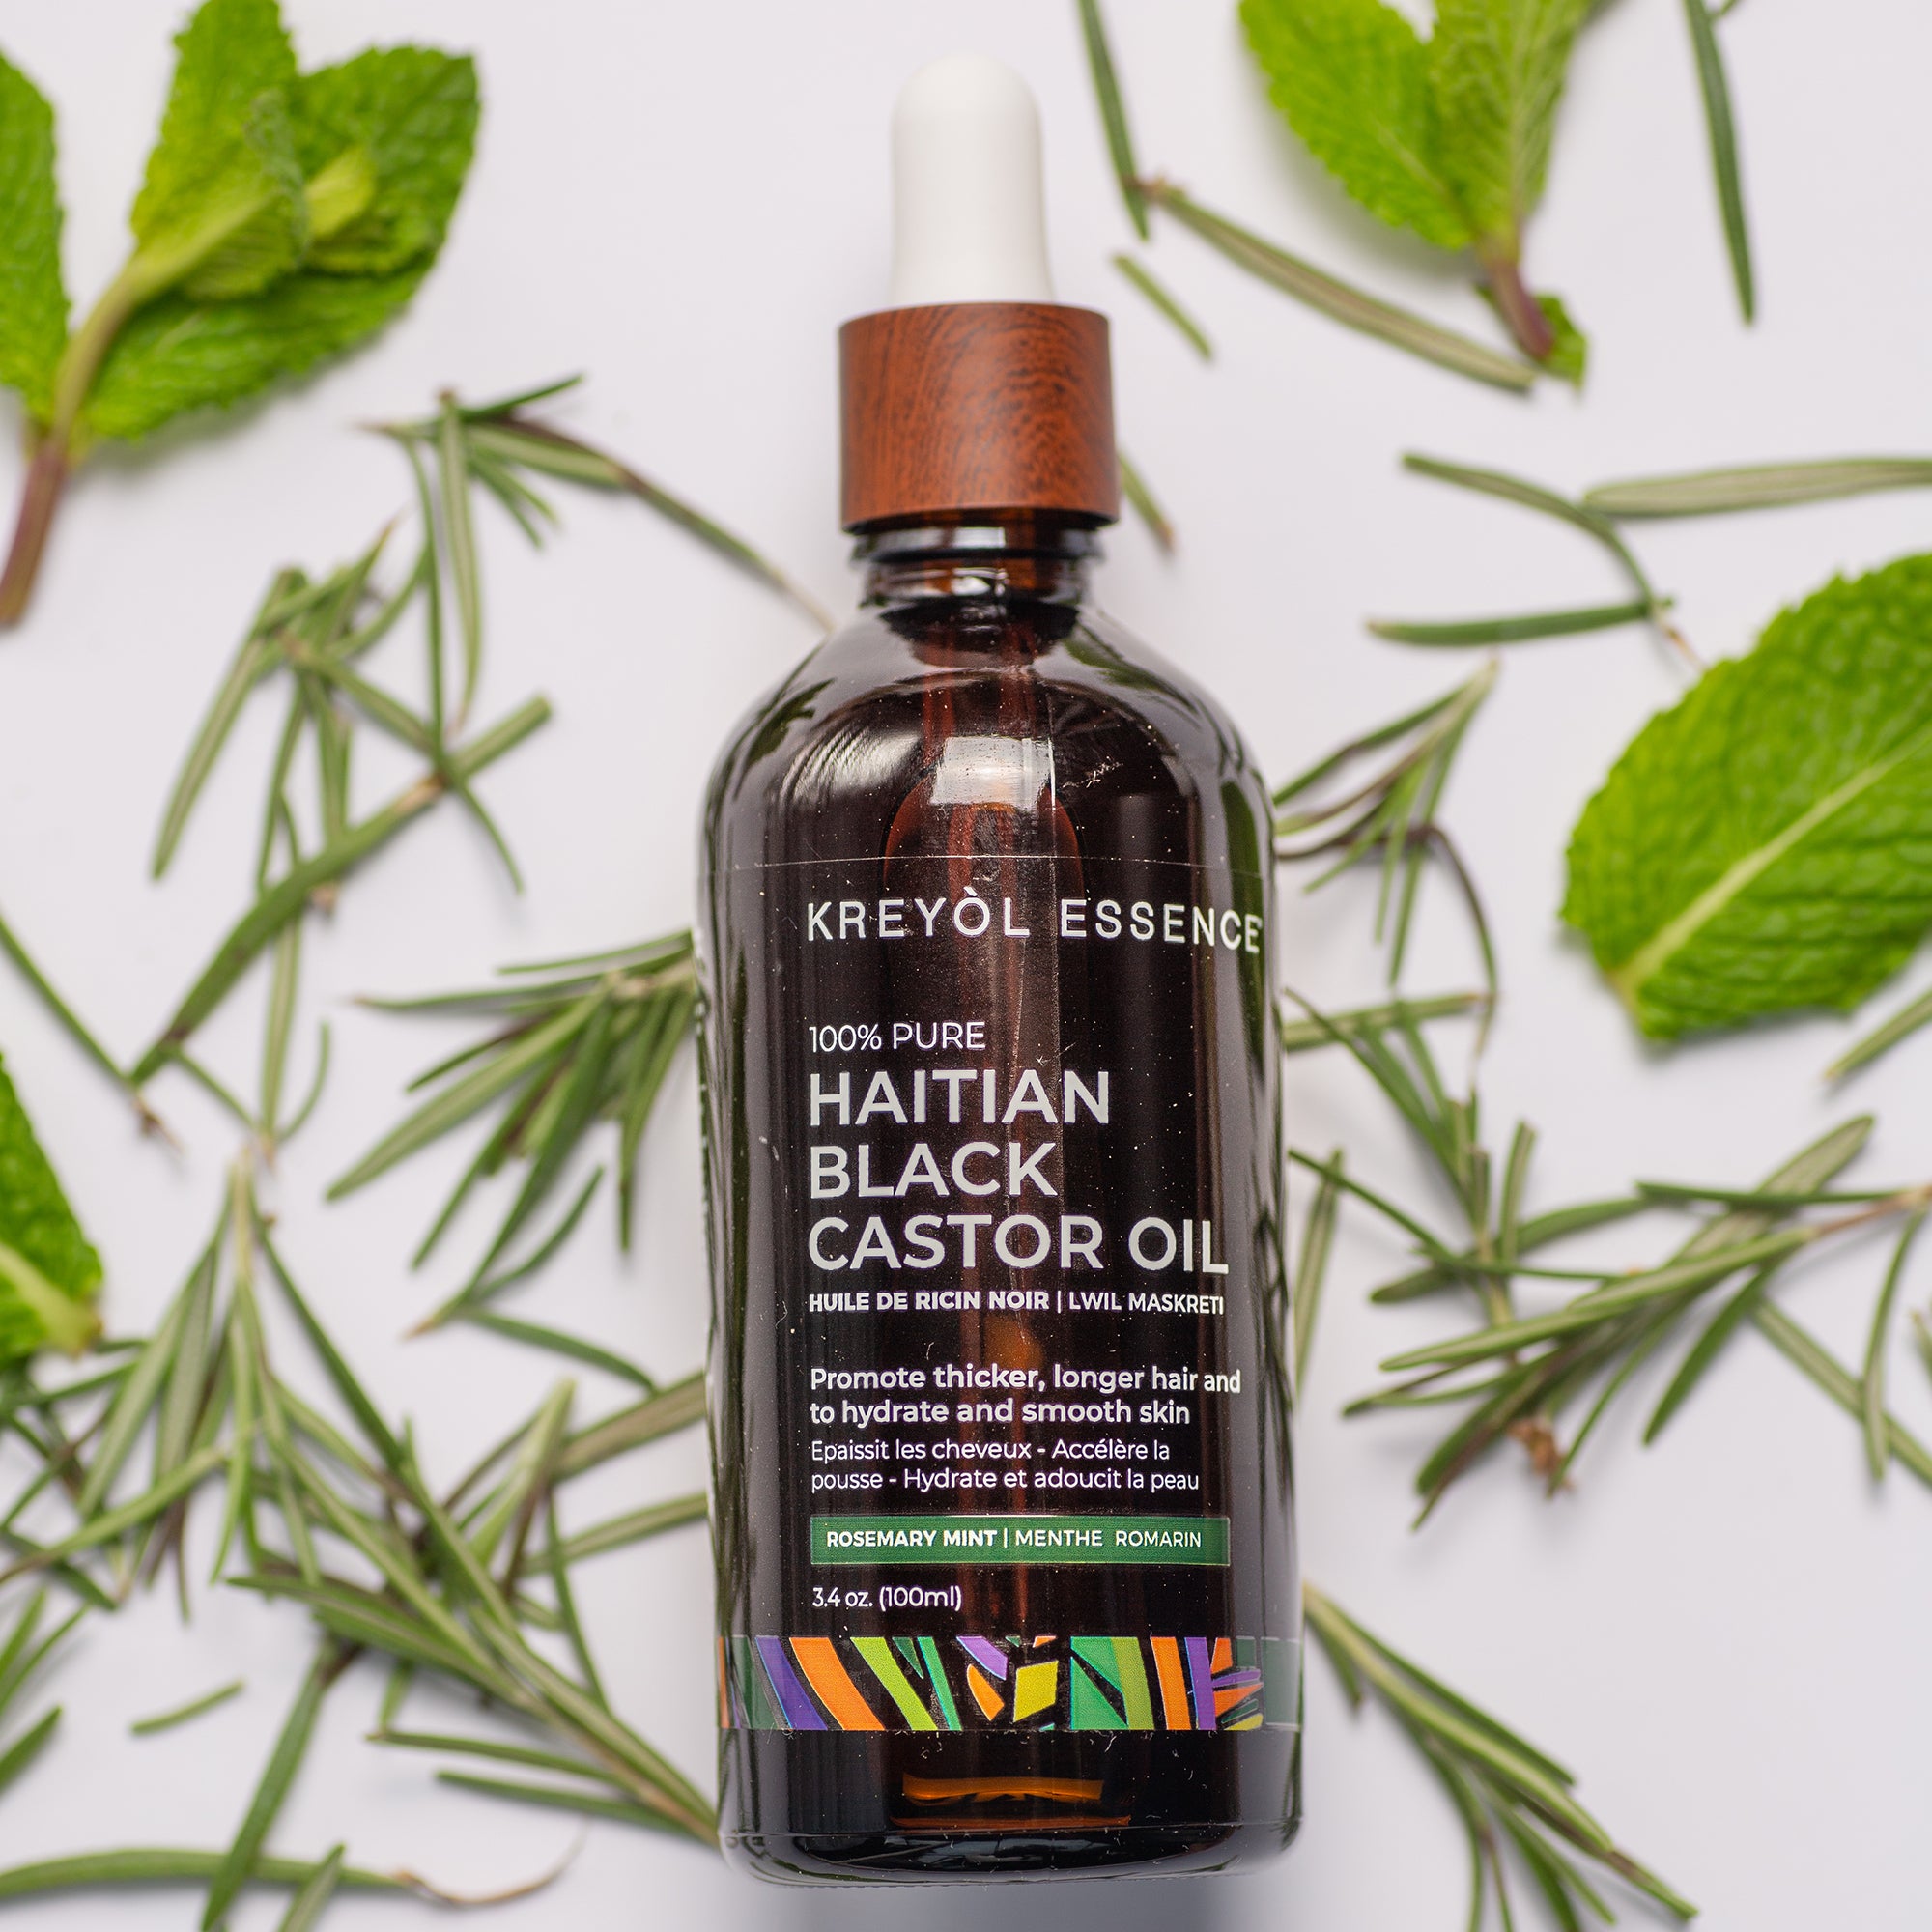 Haitian Black Castor Oil: Organic Rosemary Peppermint (3.4oz) Super Size